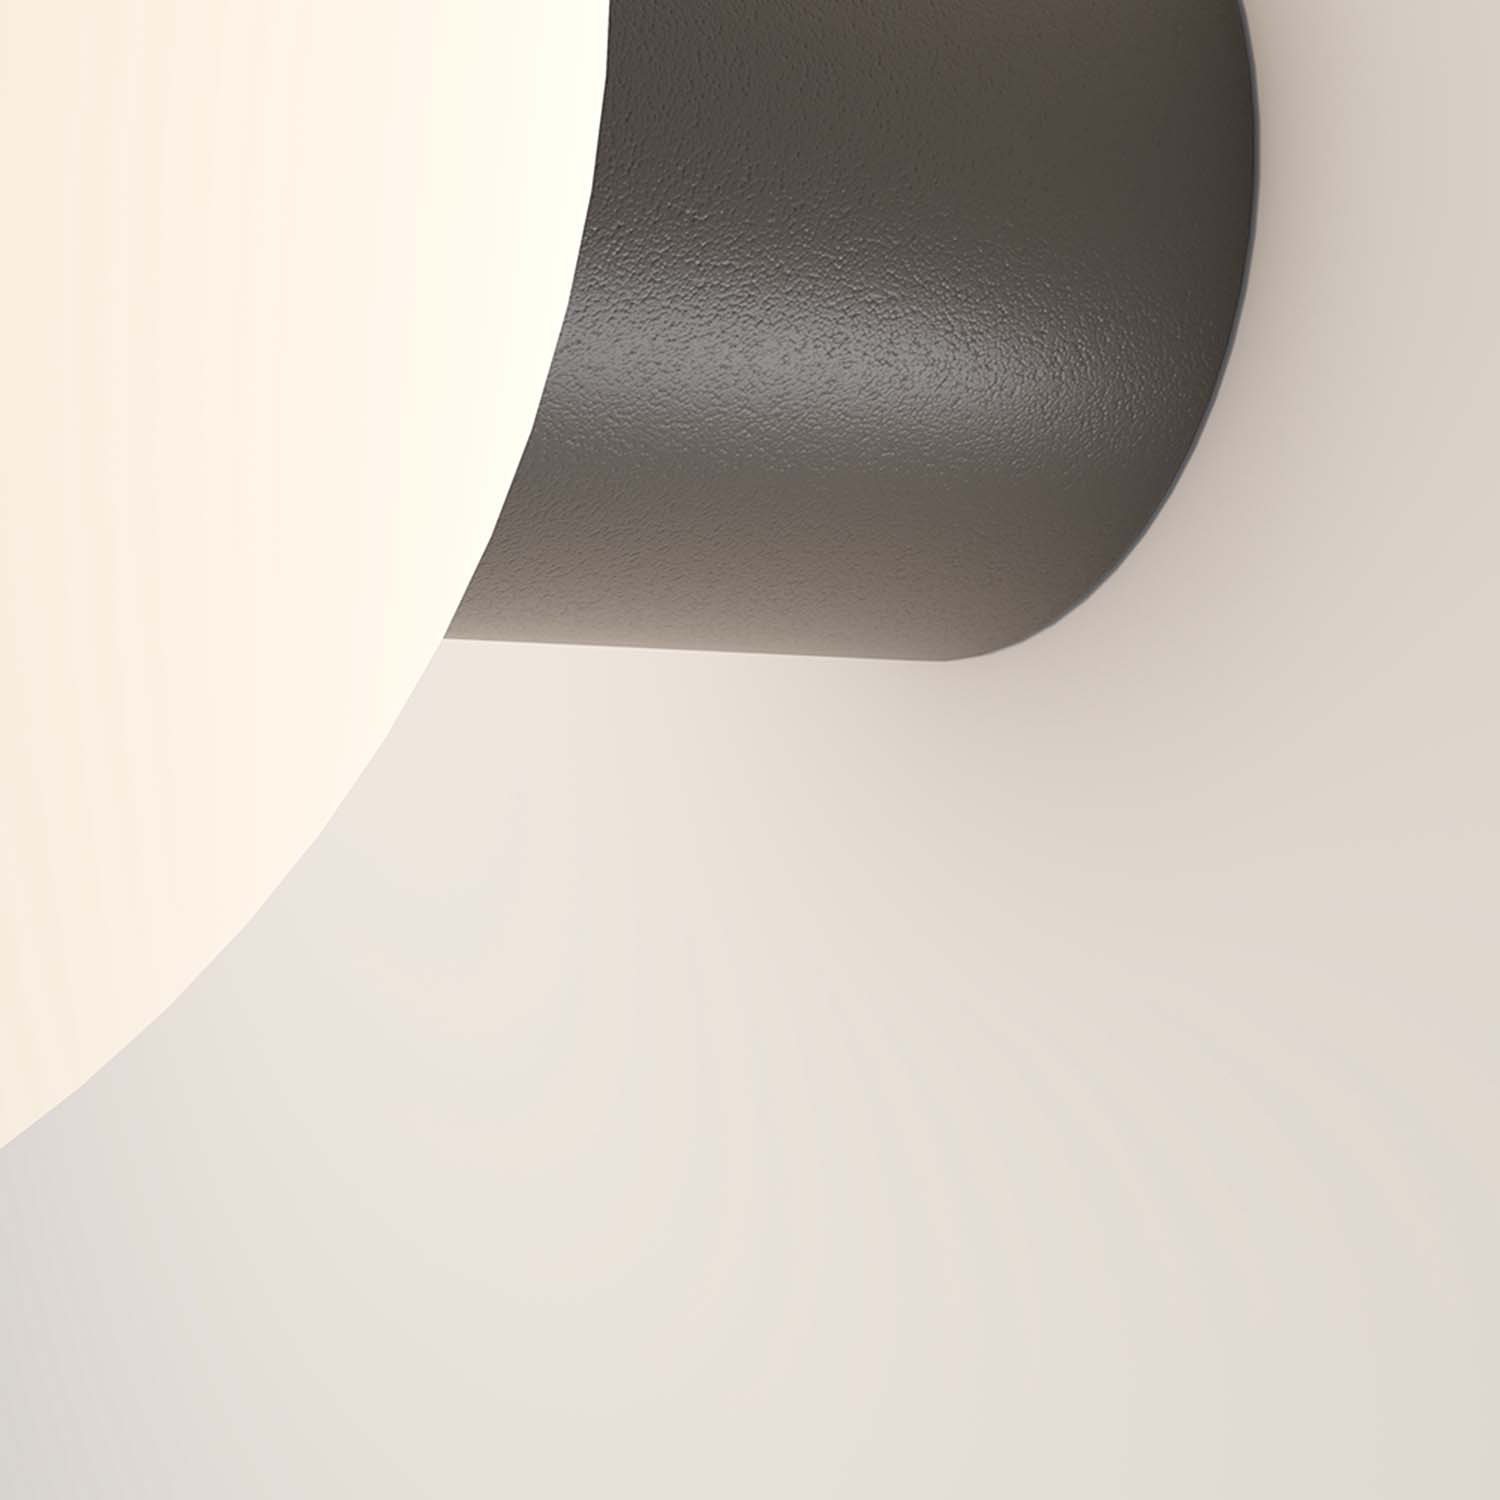 BOLD - Waterproof and stylish white globe exterior wall light